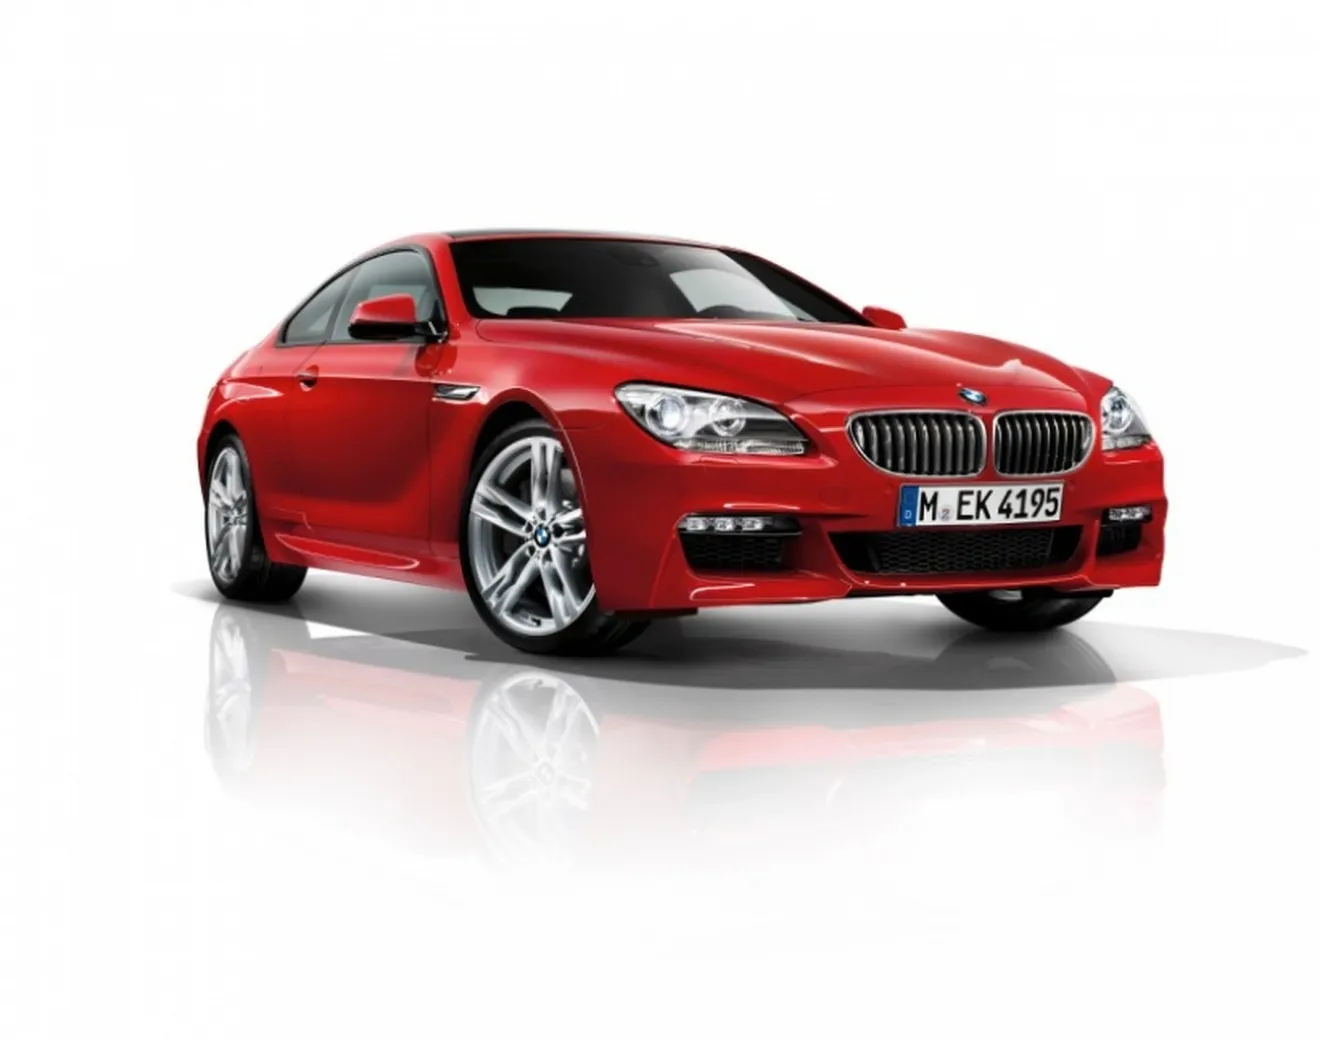 Novedades para el BMW Serie 6:  Pack M, tracción total y motor diésel